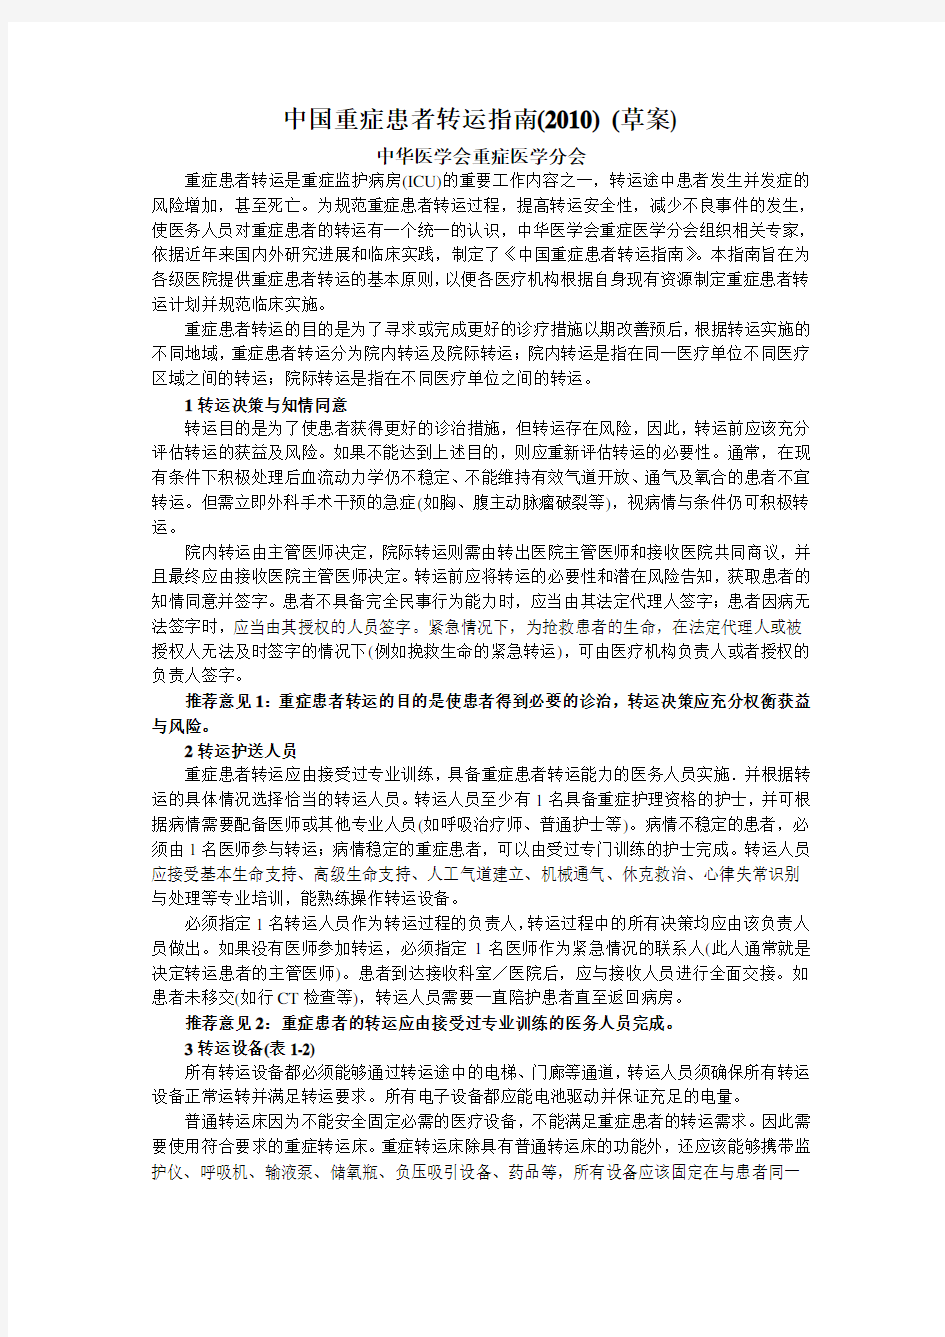 (完整版)中国重症患者转运指南(2010)_(草案)